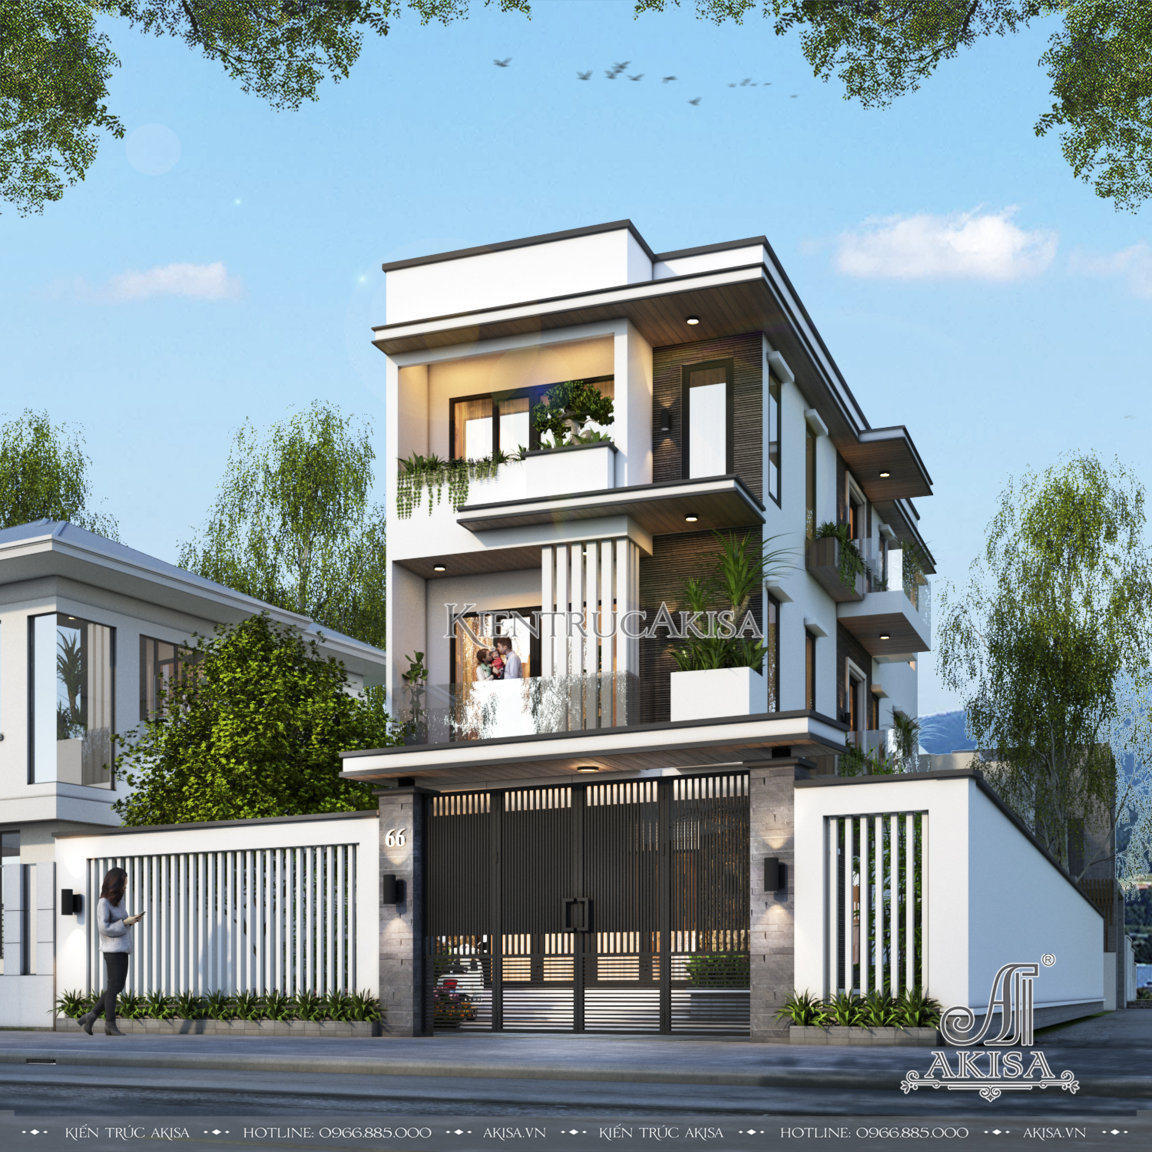 Thiết kế nhà hộp 3 tầng hiện đại 5x15m tại Ninh Thuận